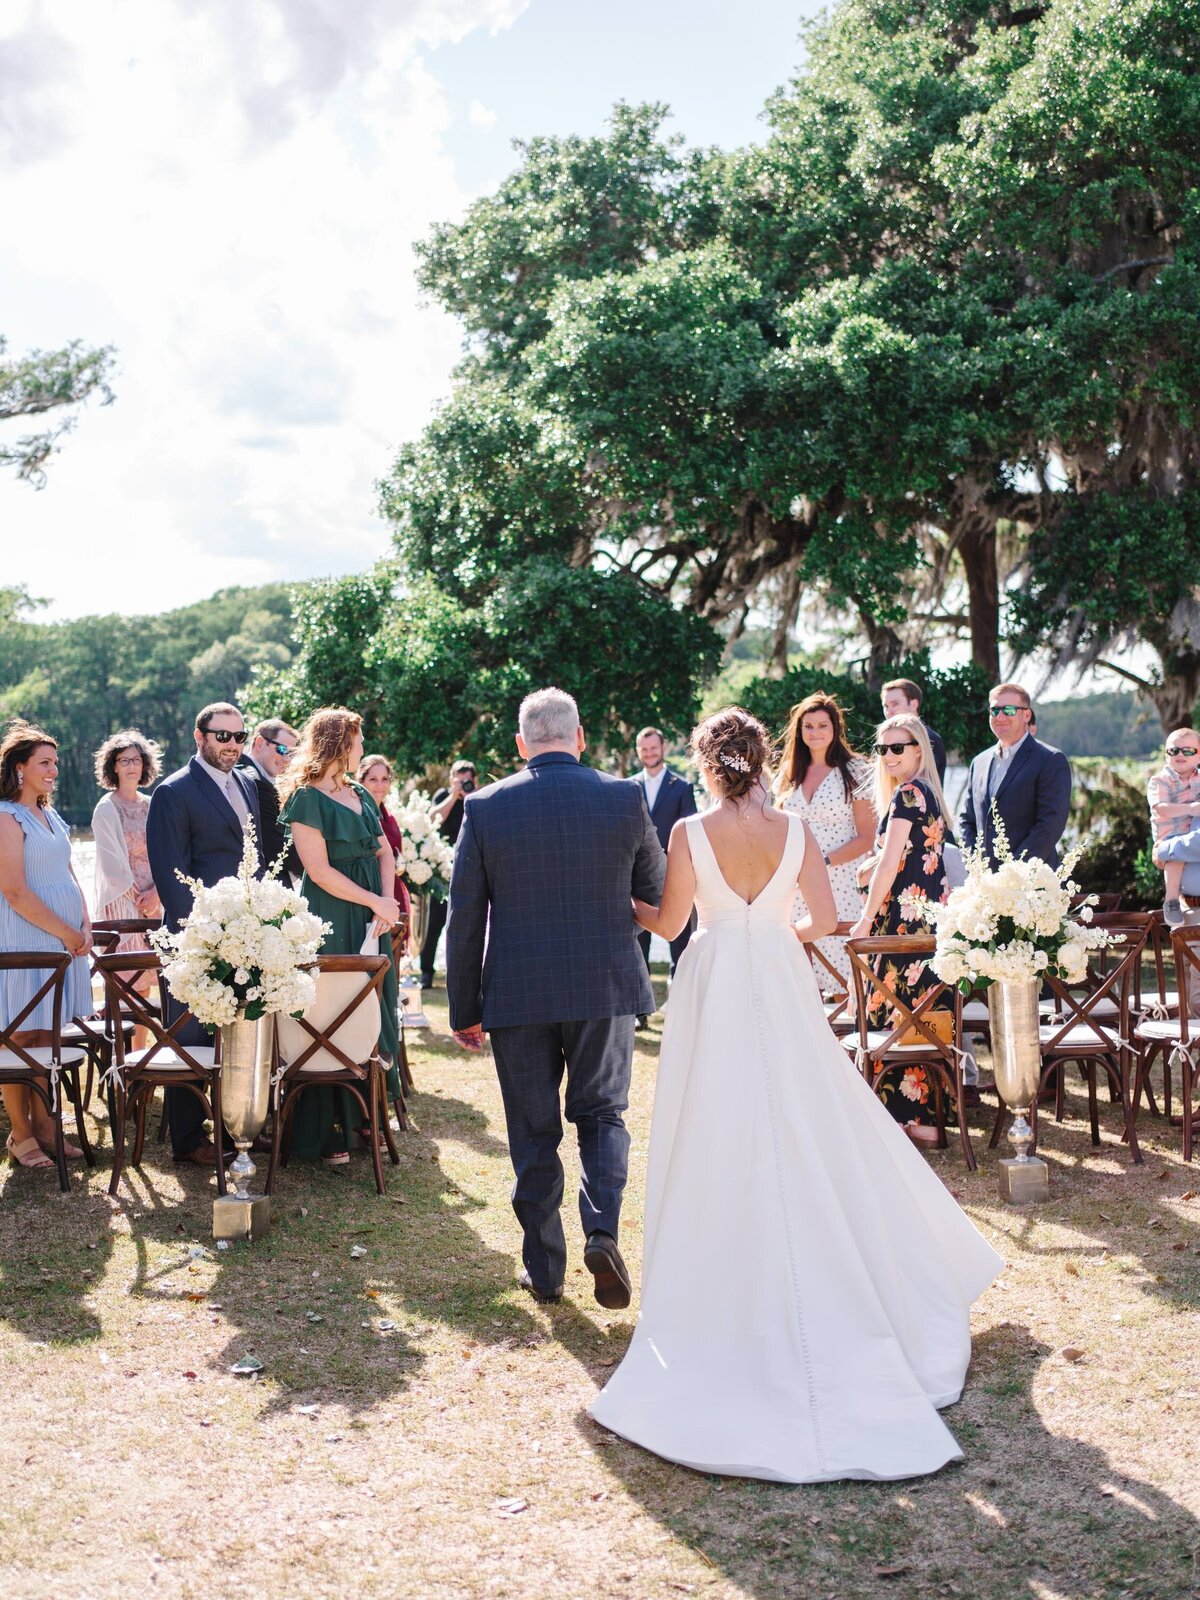 Wachesaw Wedding Photo Ideas near Pawleys Island by the Best Wedding Photographer in South Carolina_-47